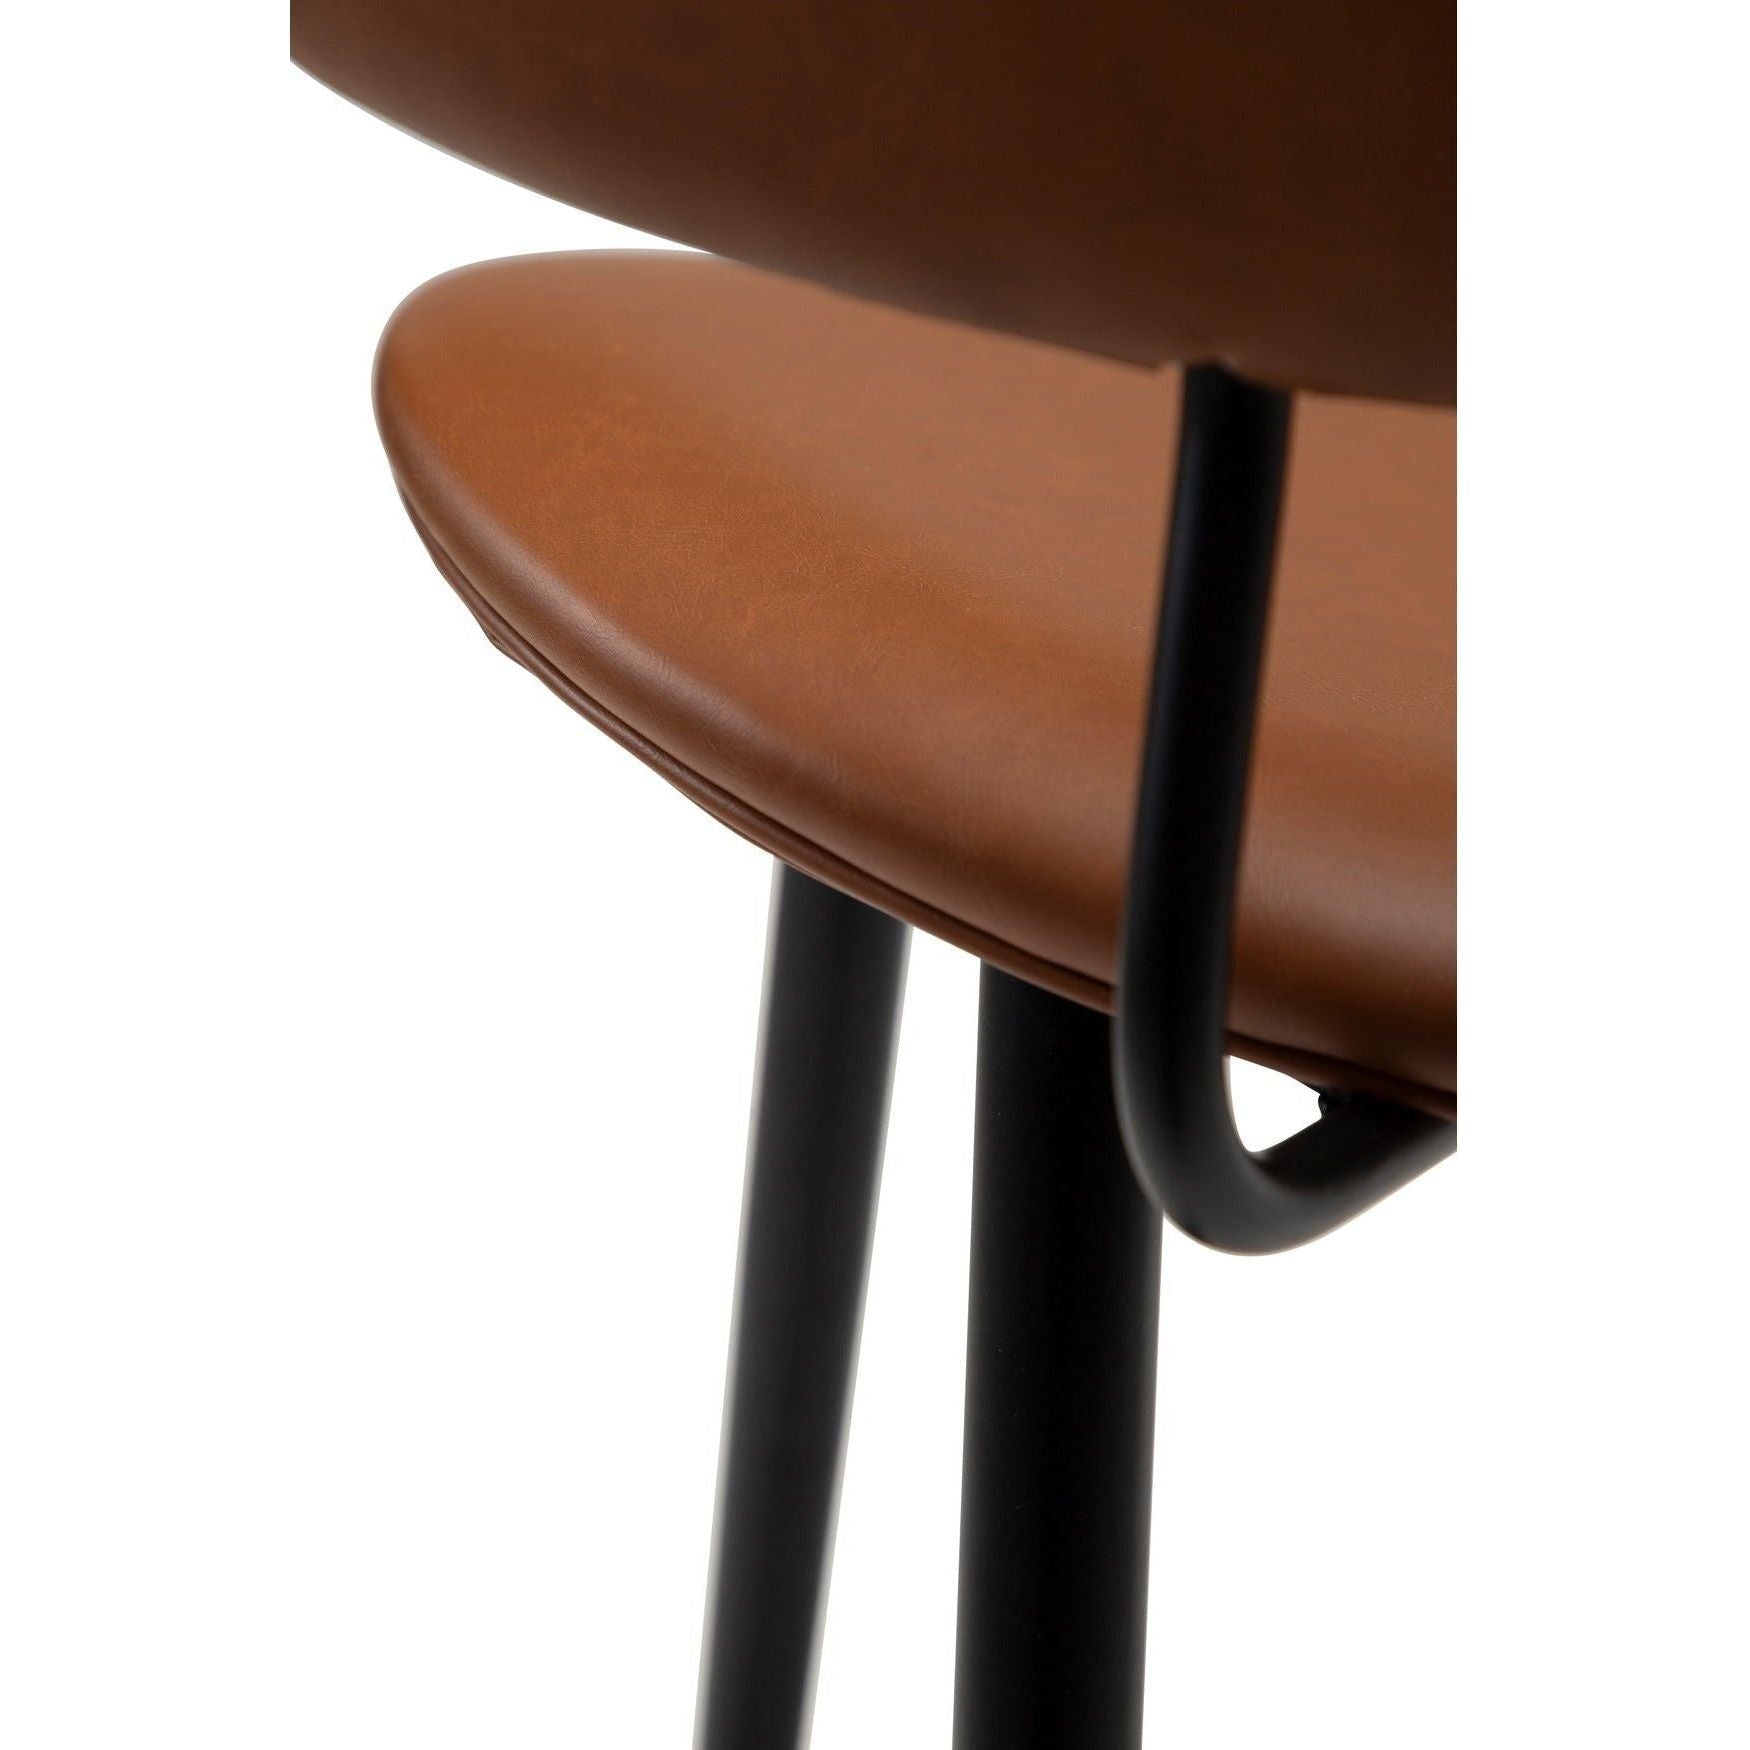 NAPALEON baro kėdė, ruda spalva